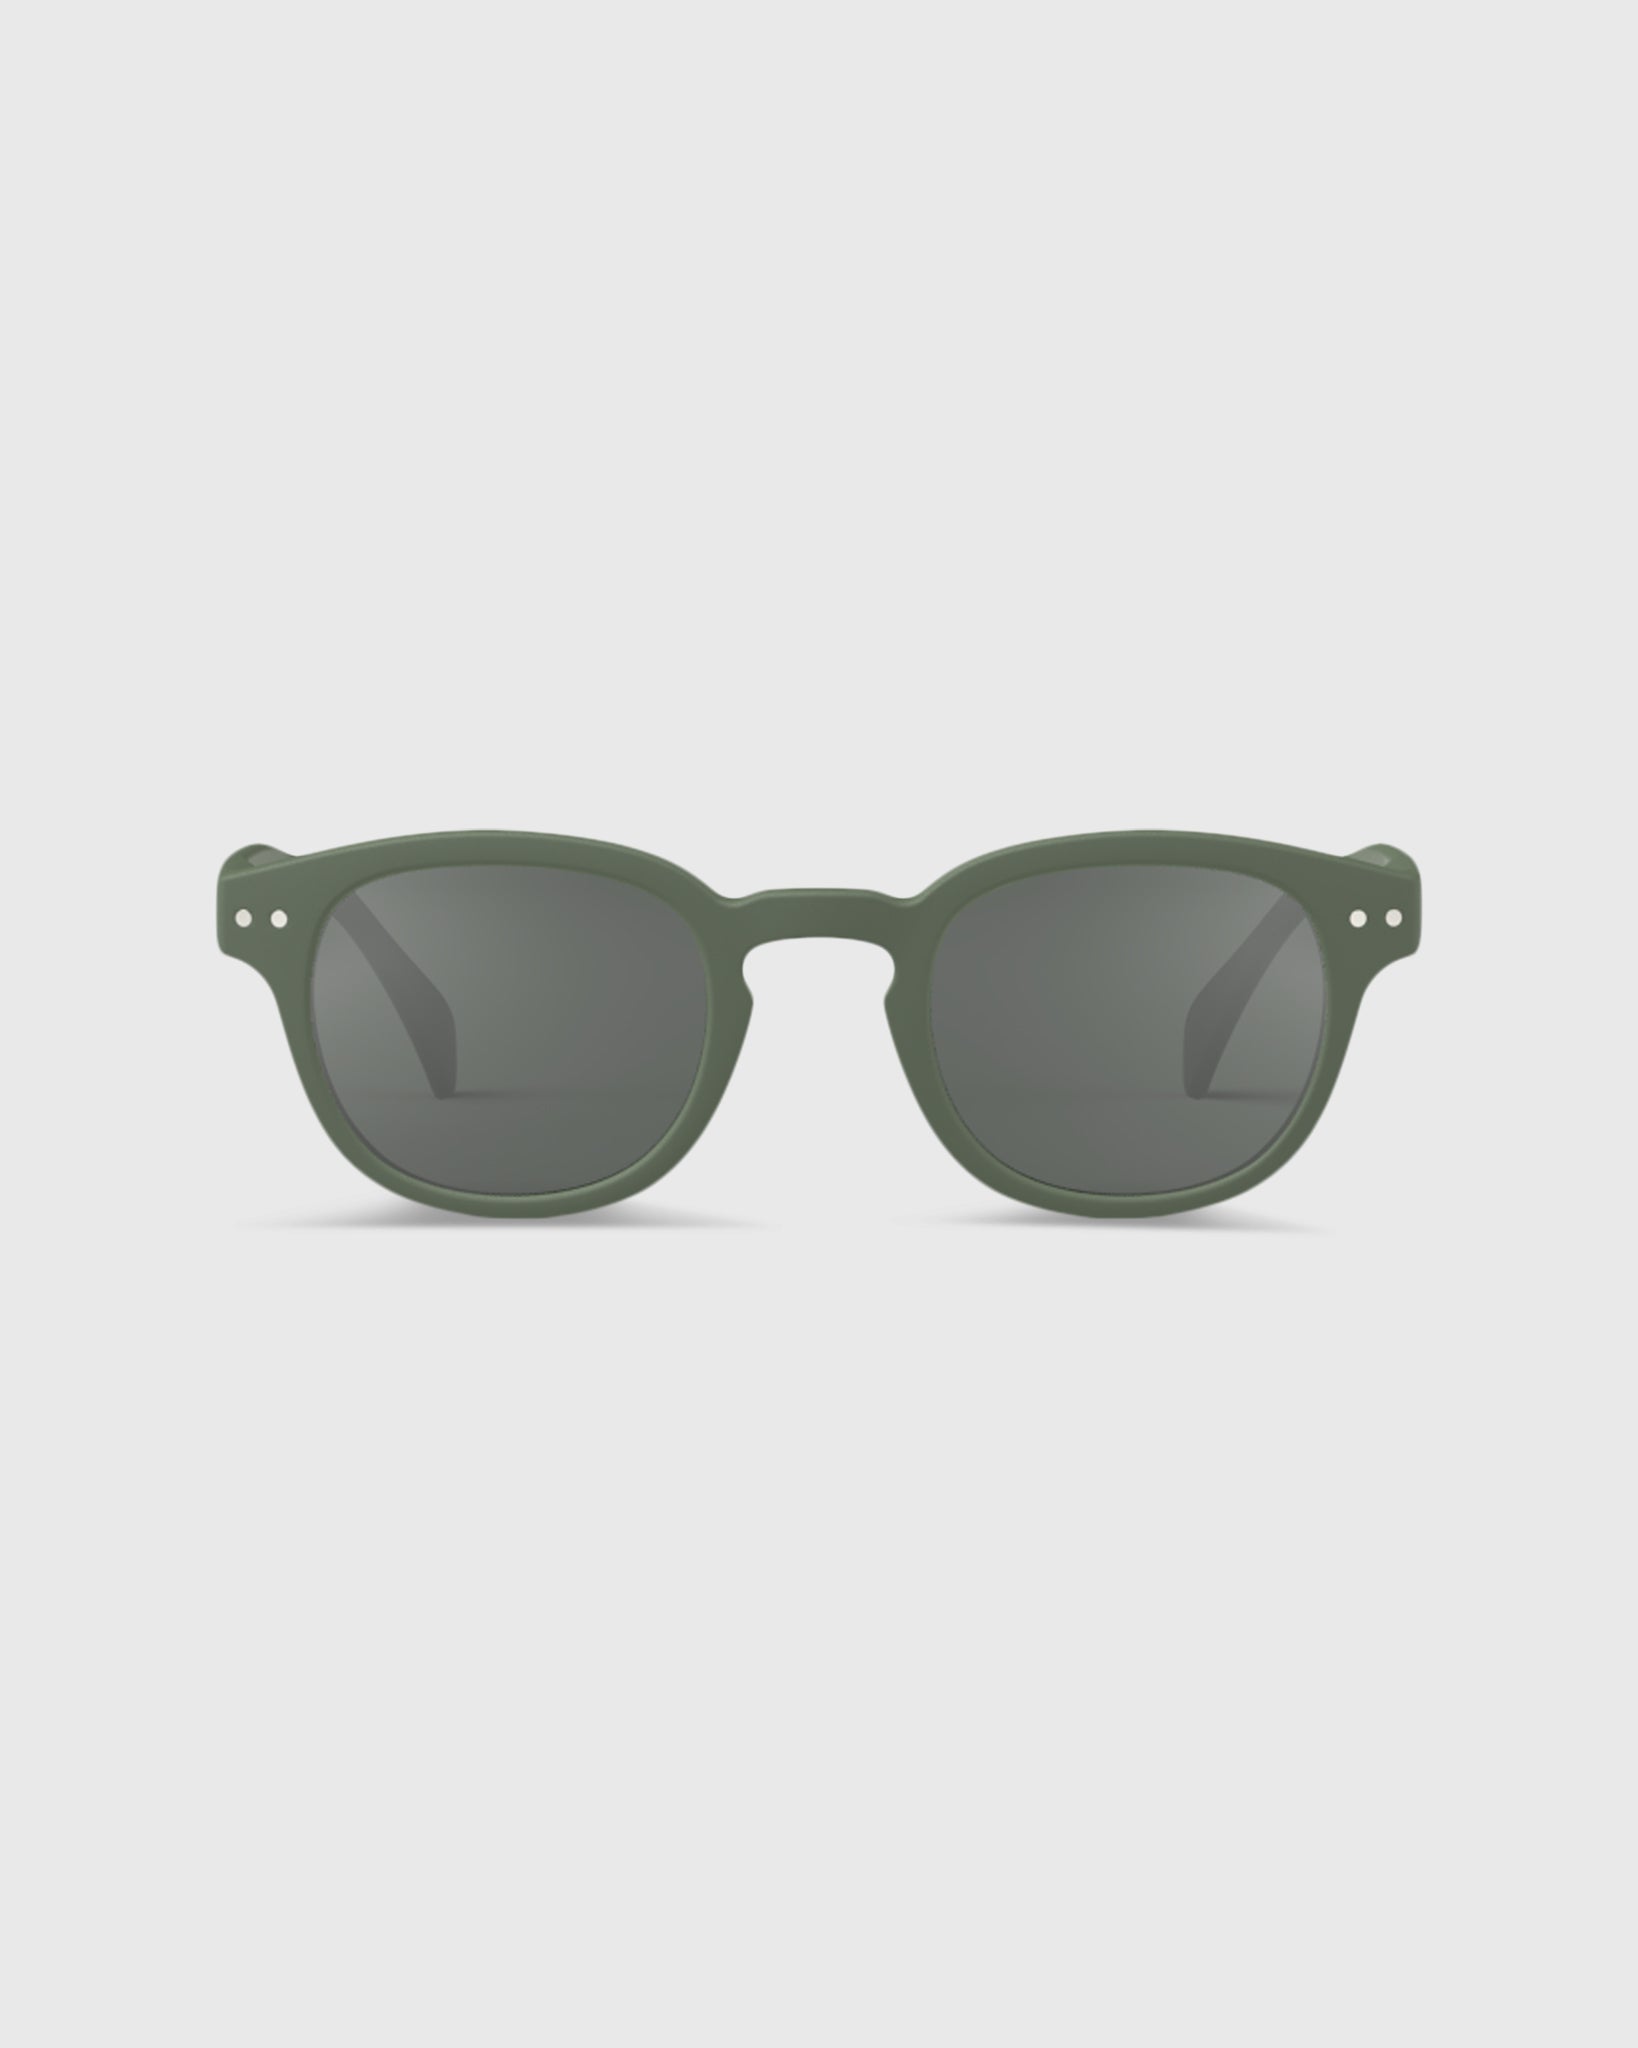 #C Sunglasses in Kaki Green